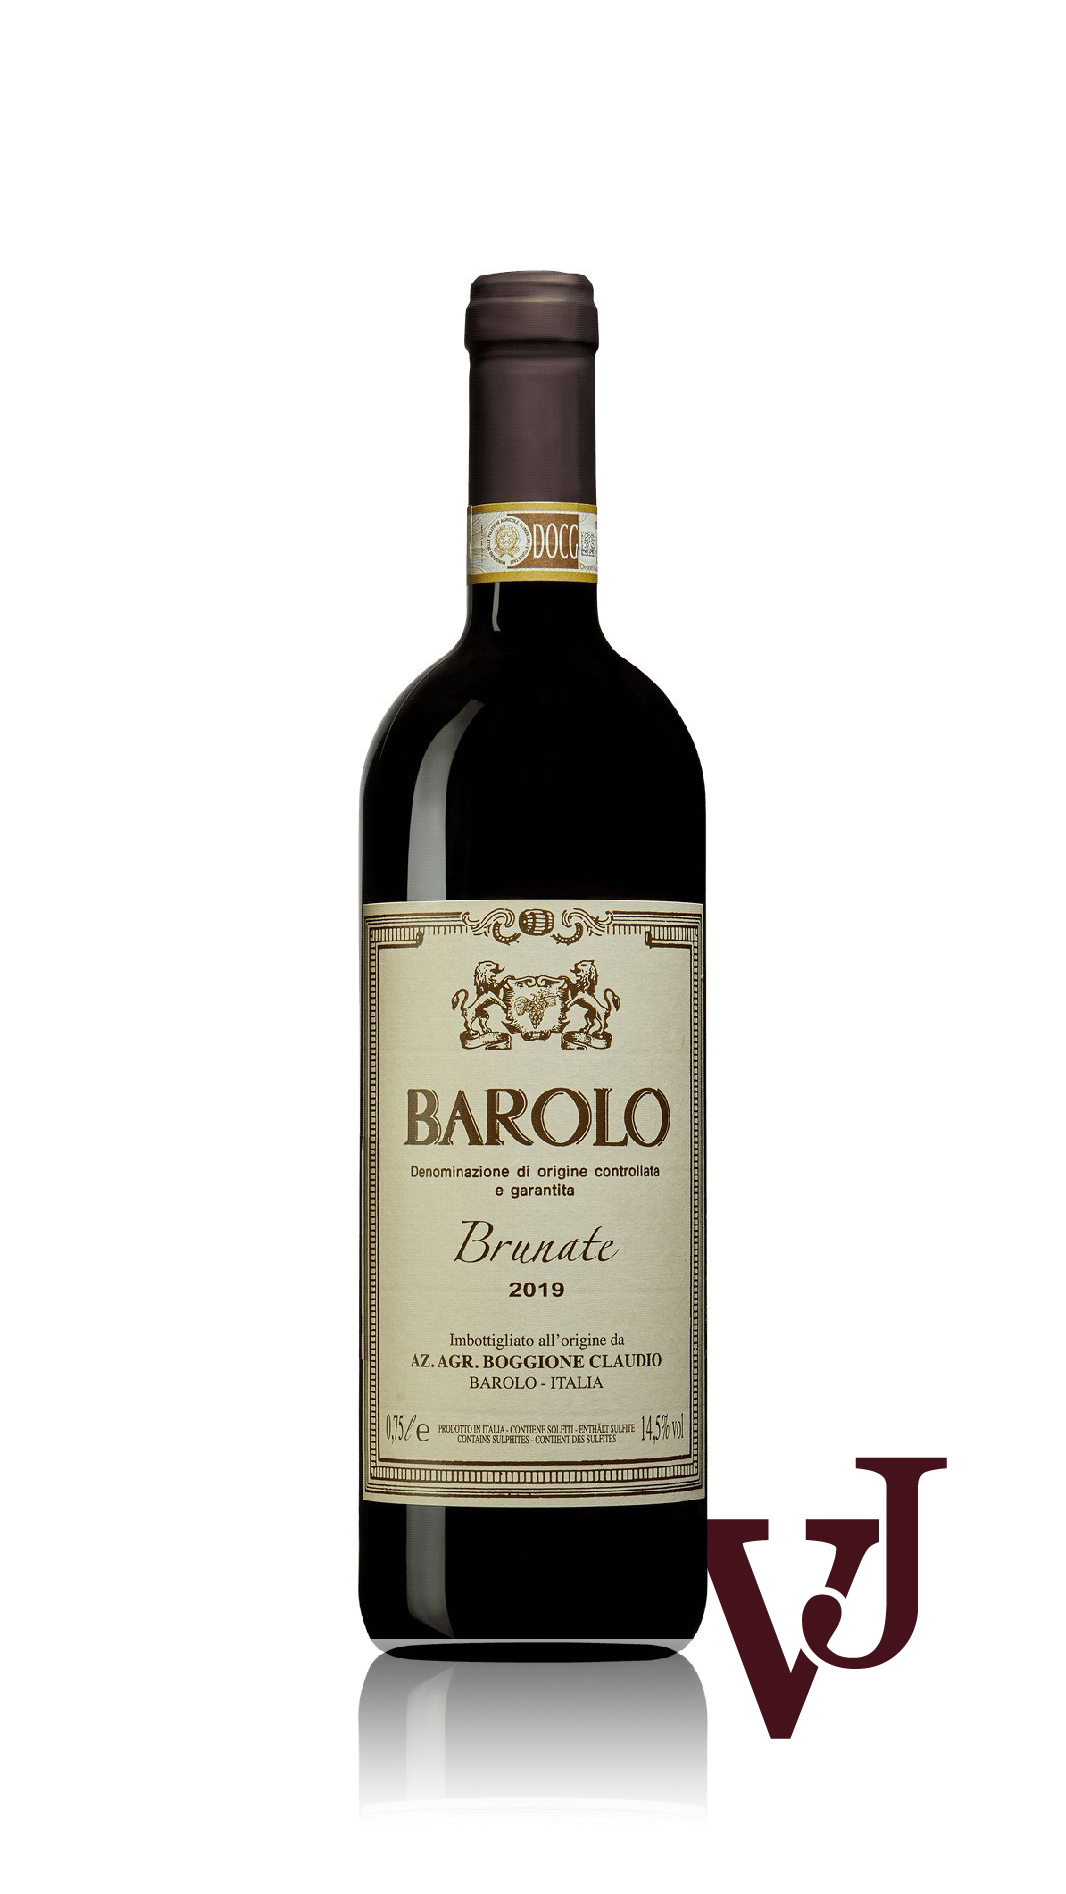 Rött Vin - Barolo Brunate 2019 artikel nummer 9311101 från producenten Claudio Boggione från Italien